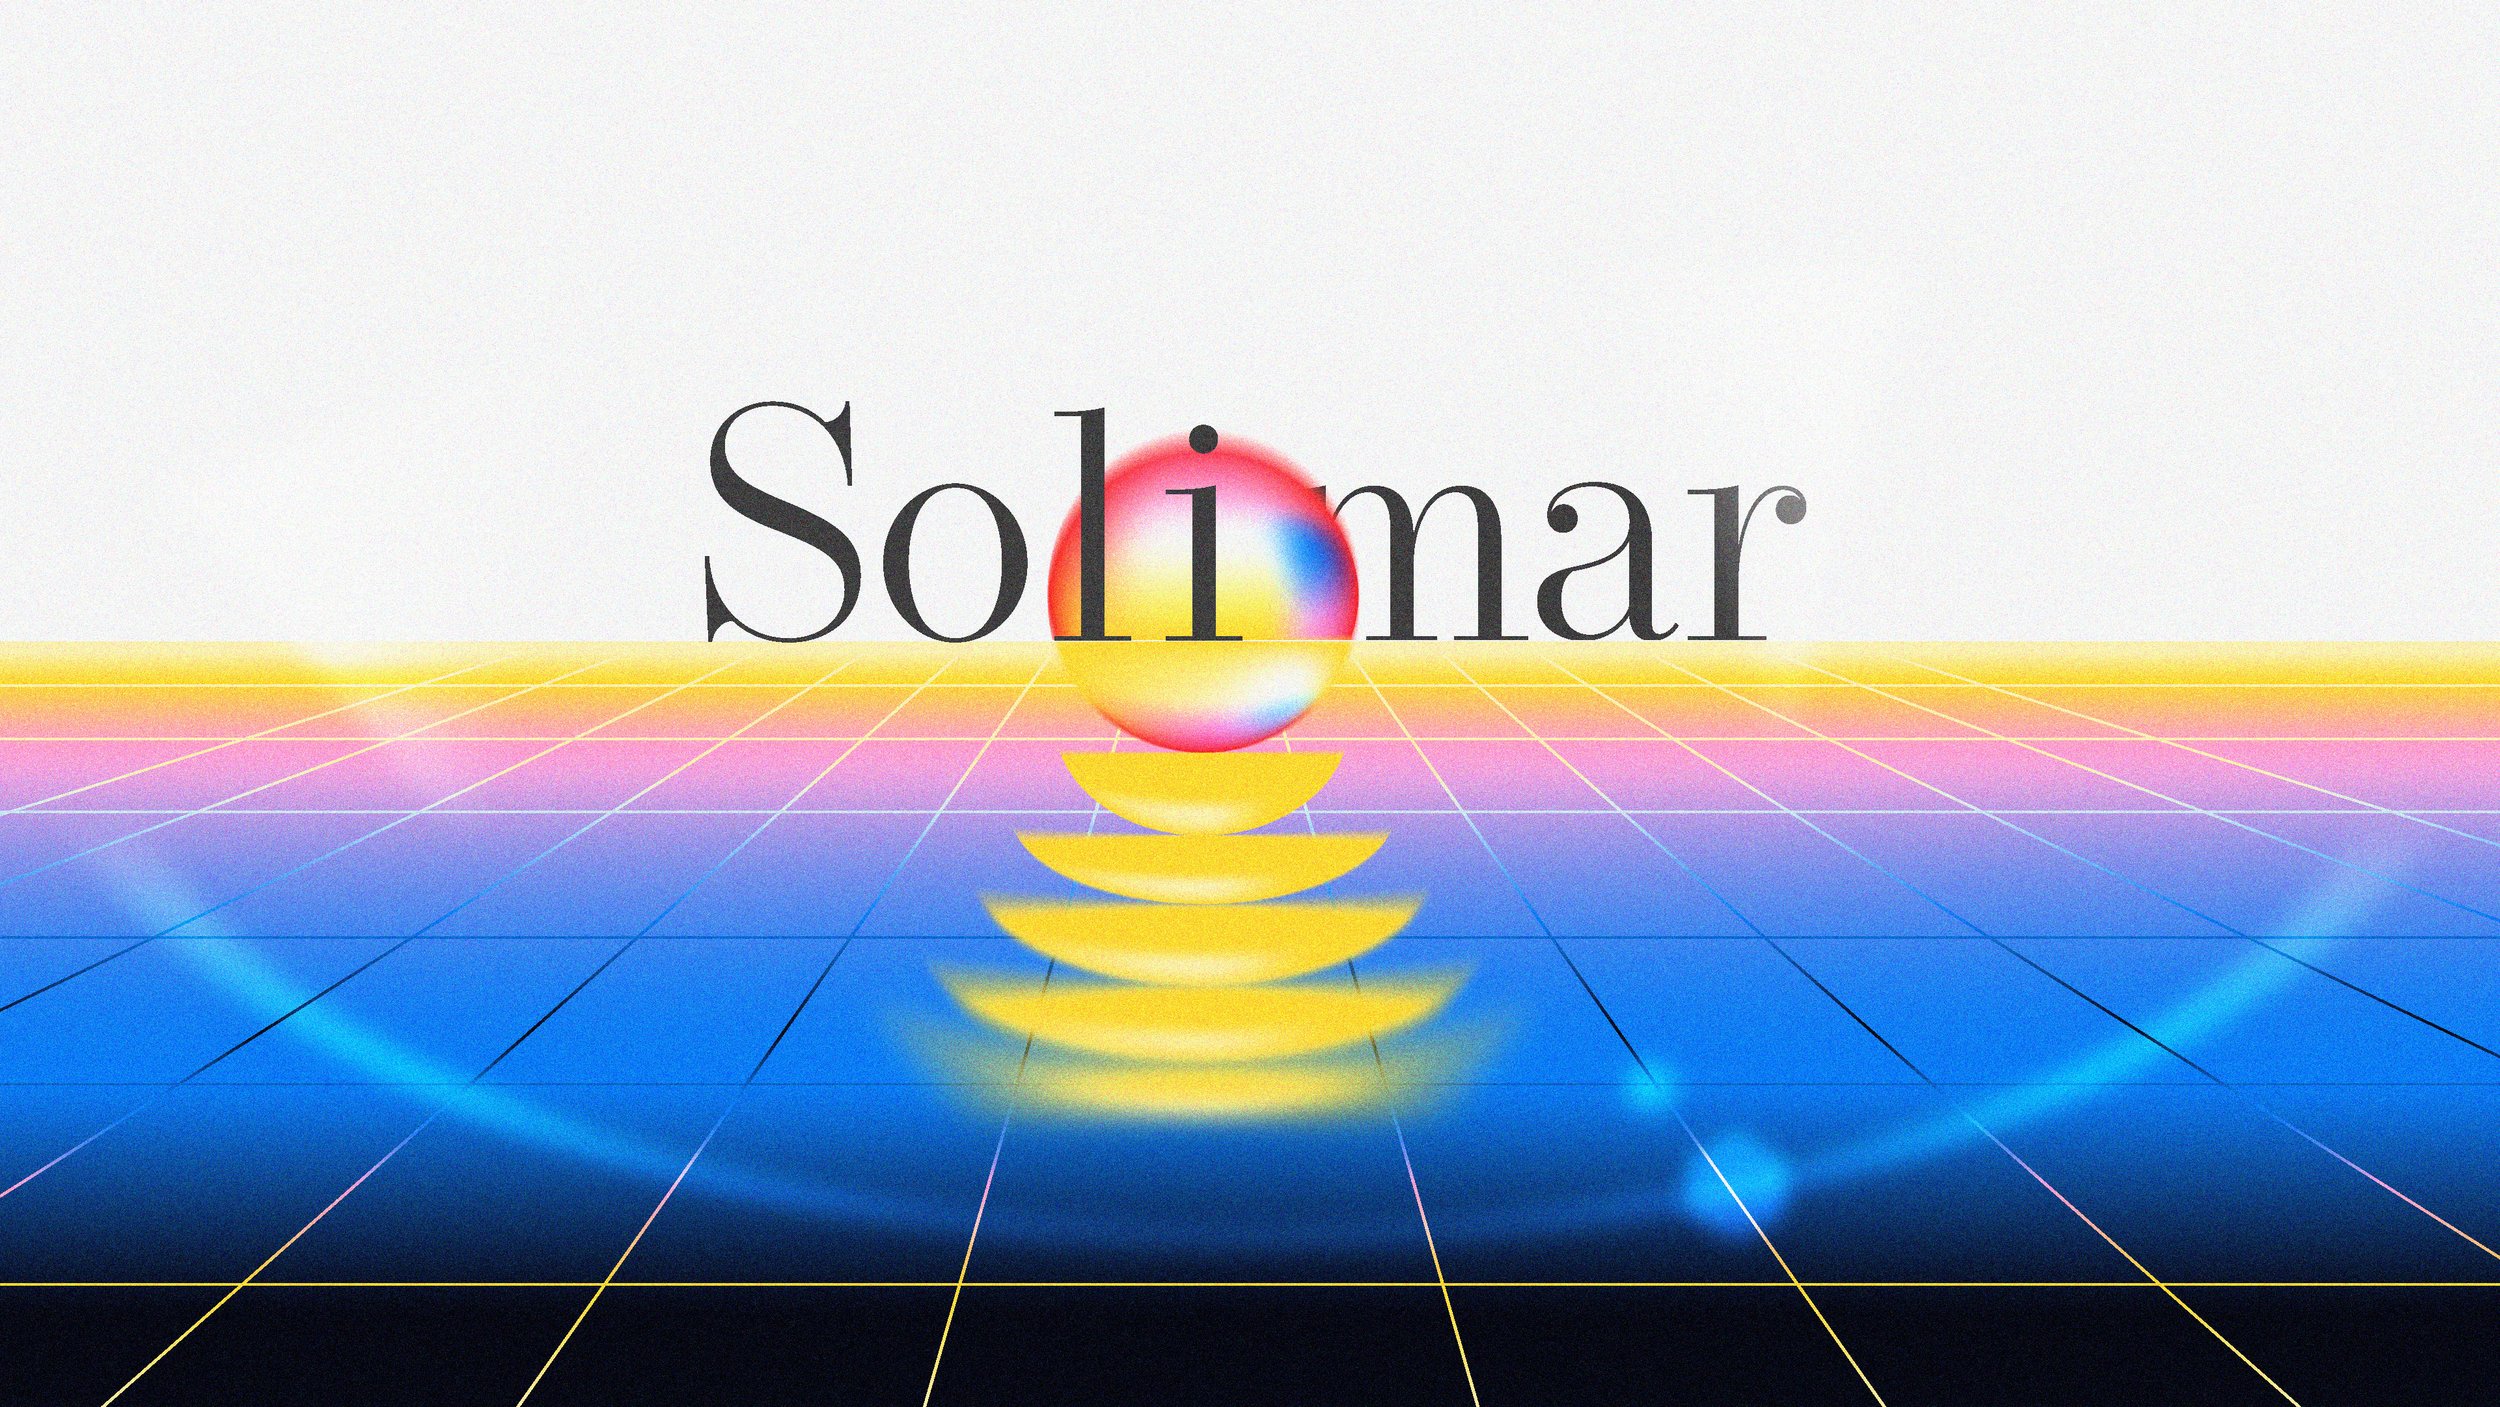 Solimar_S06_v01_lg_frame 3 - 16-9 .jpg